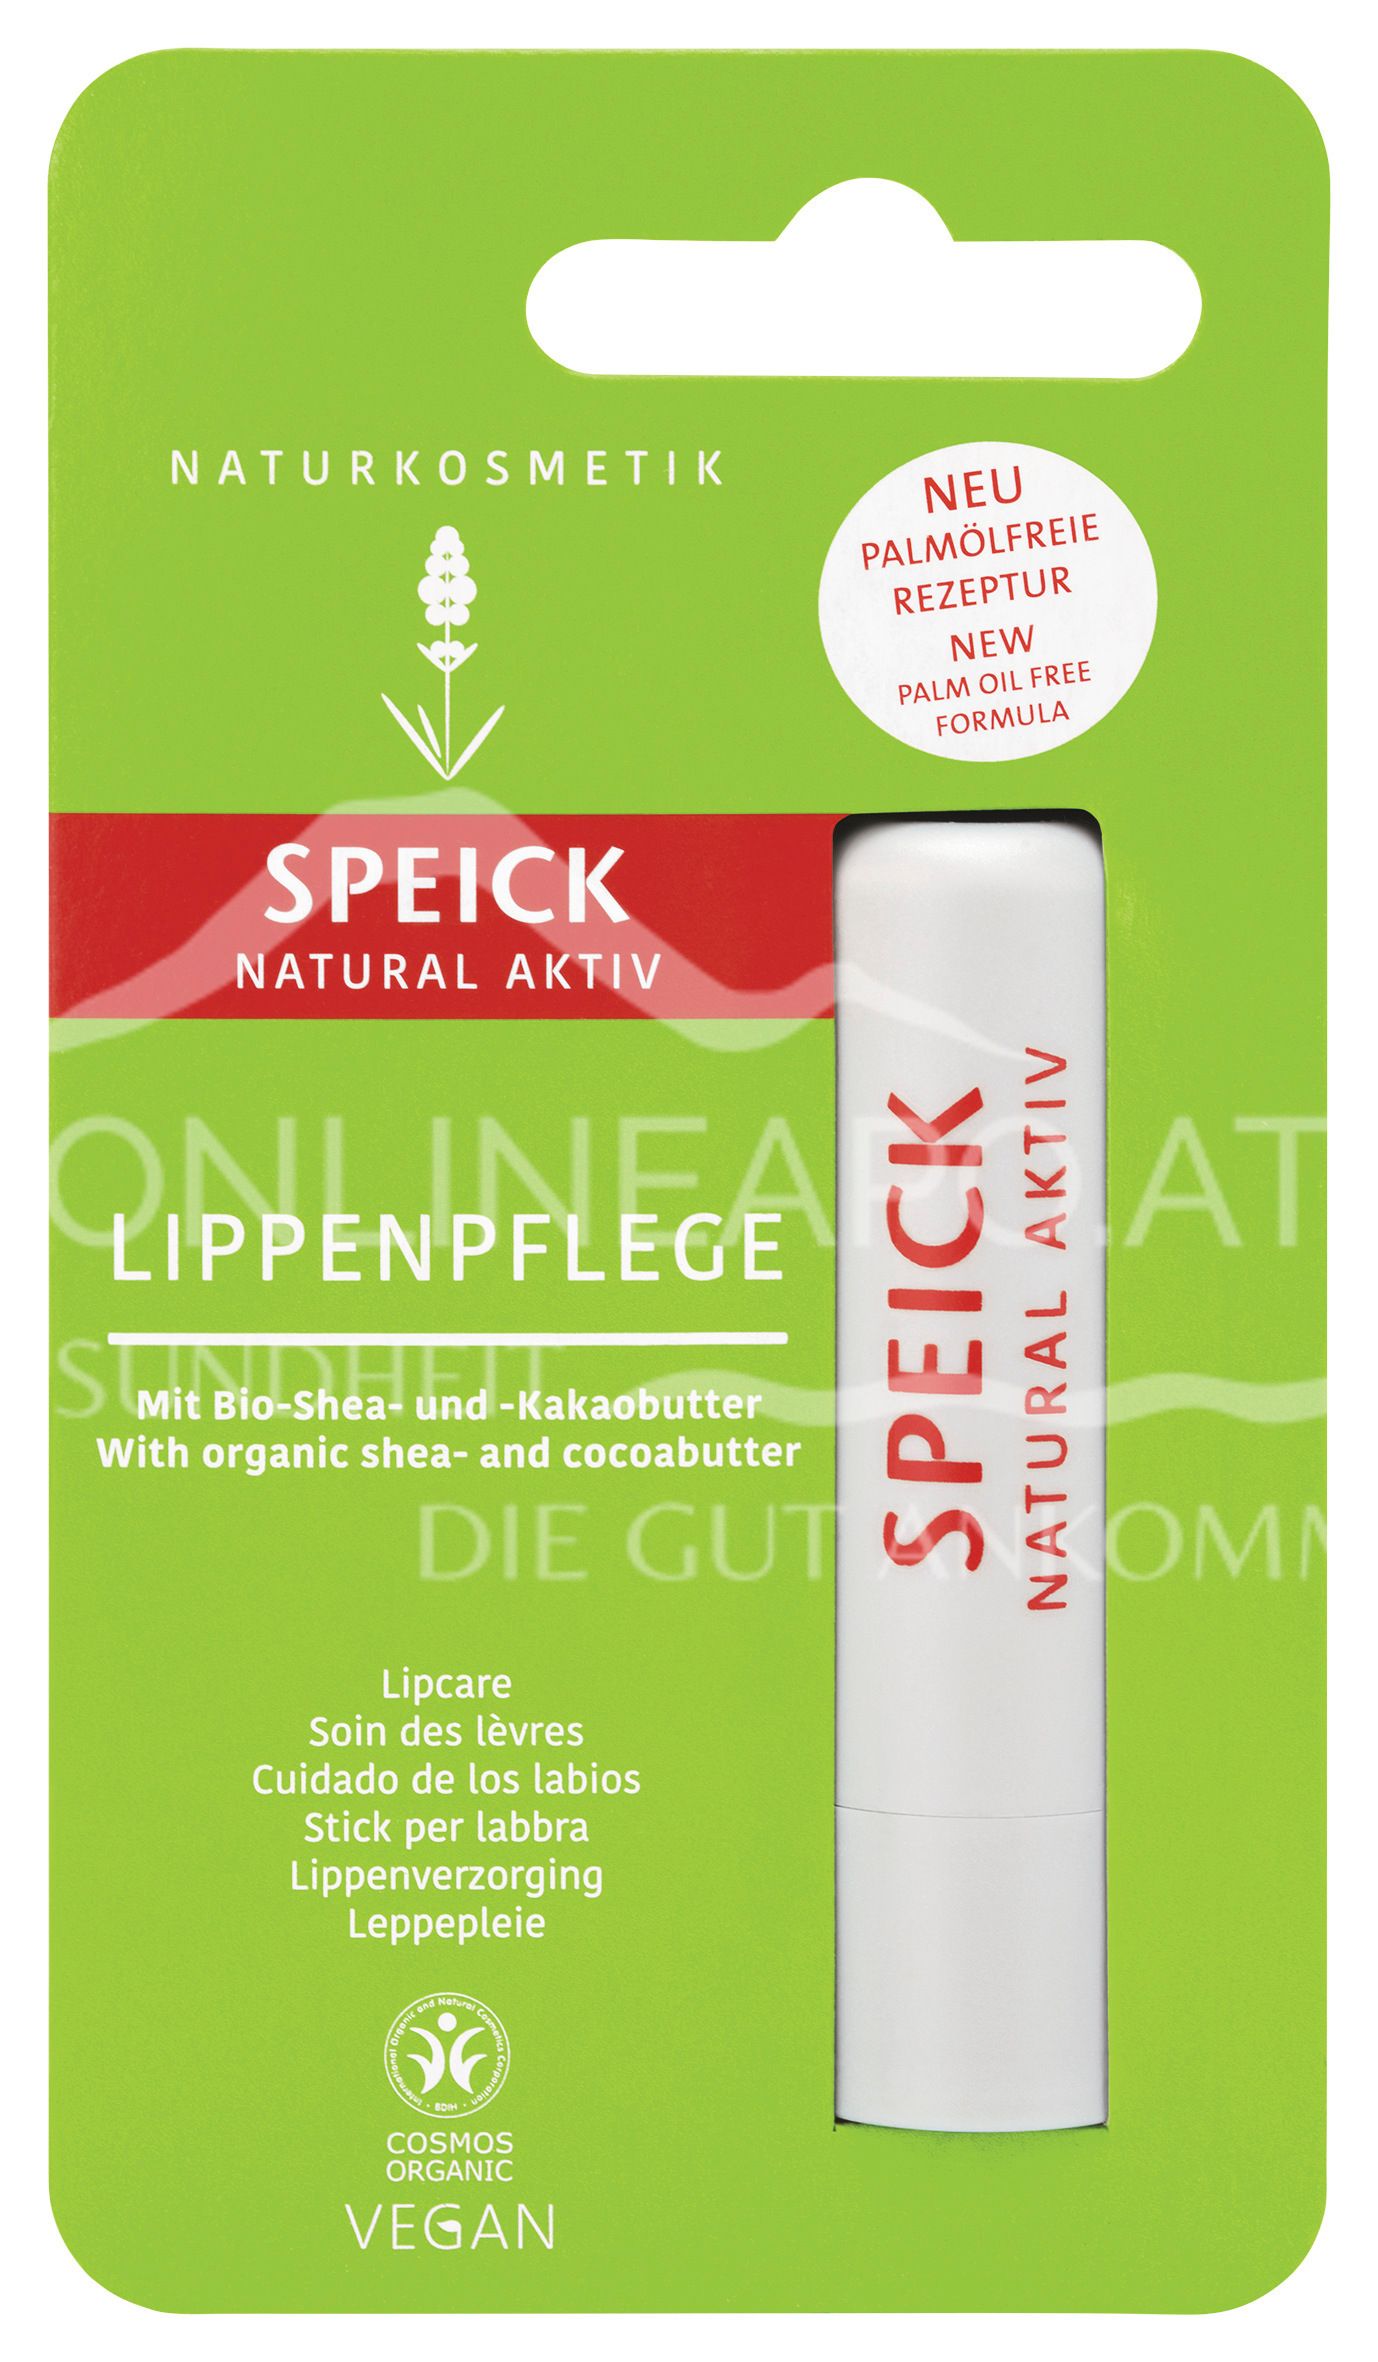 Speick Natural Aktiv Lippenpflege